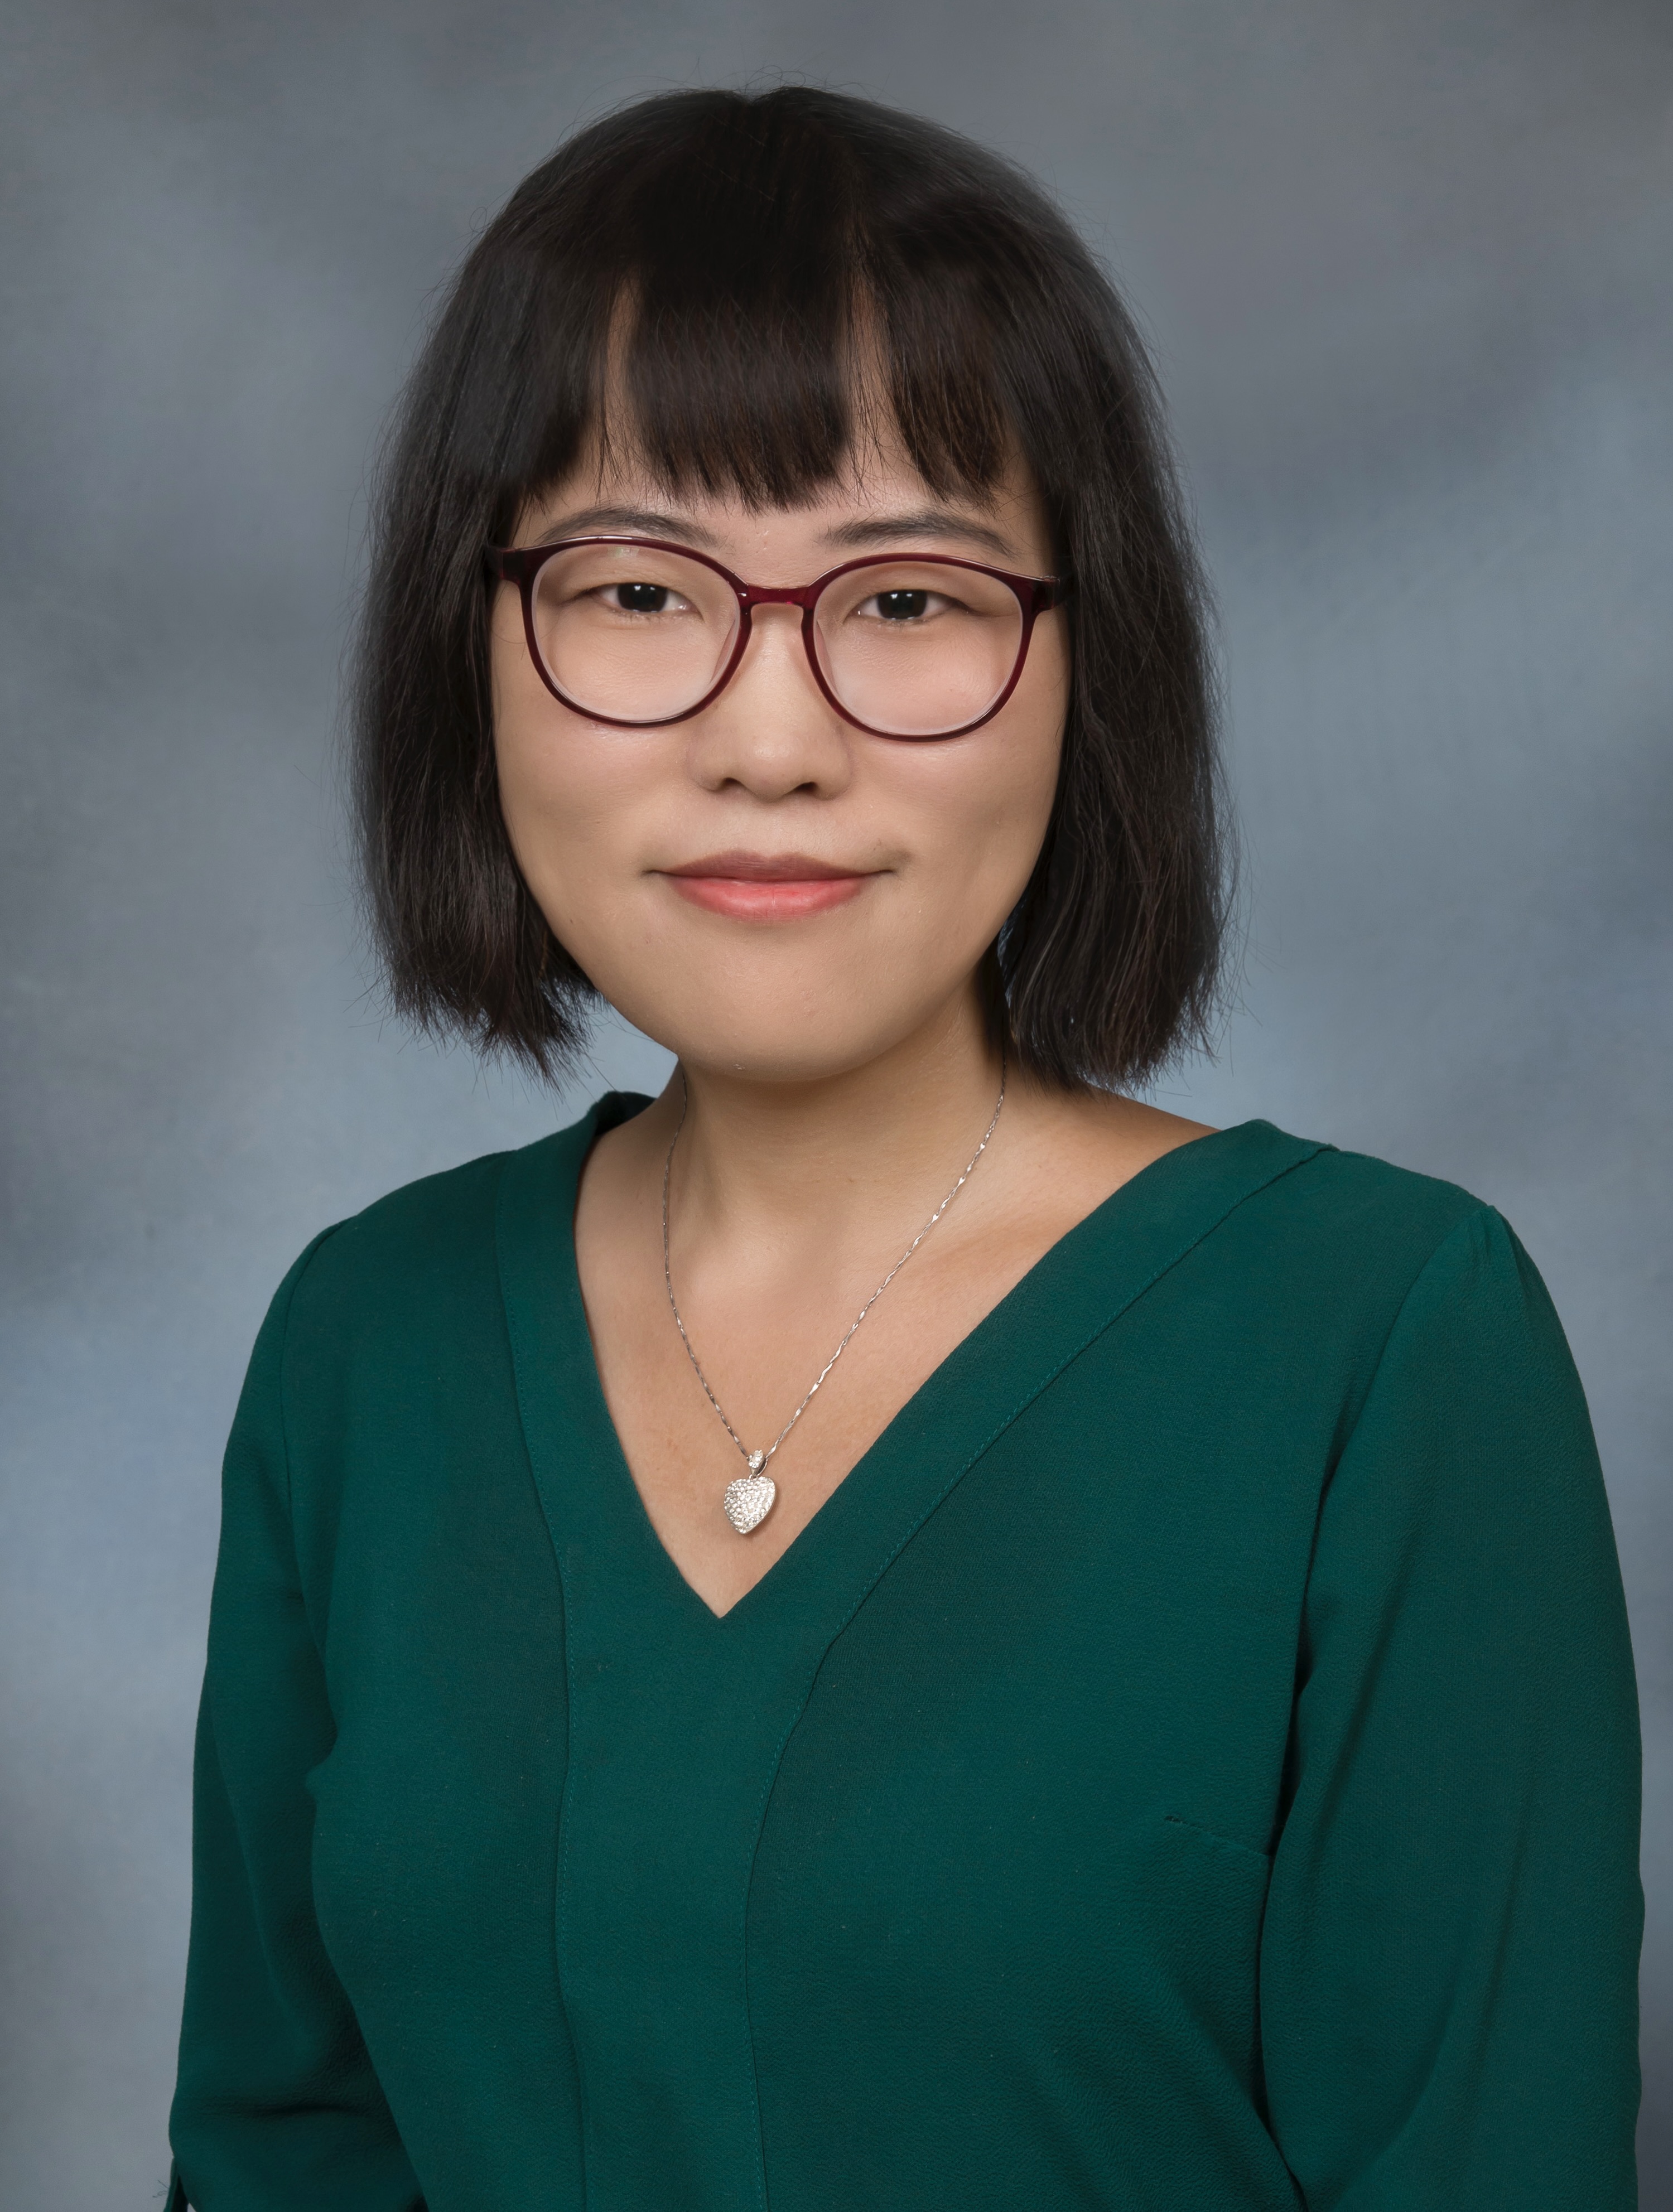 Dr. Lixia Zhang